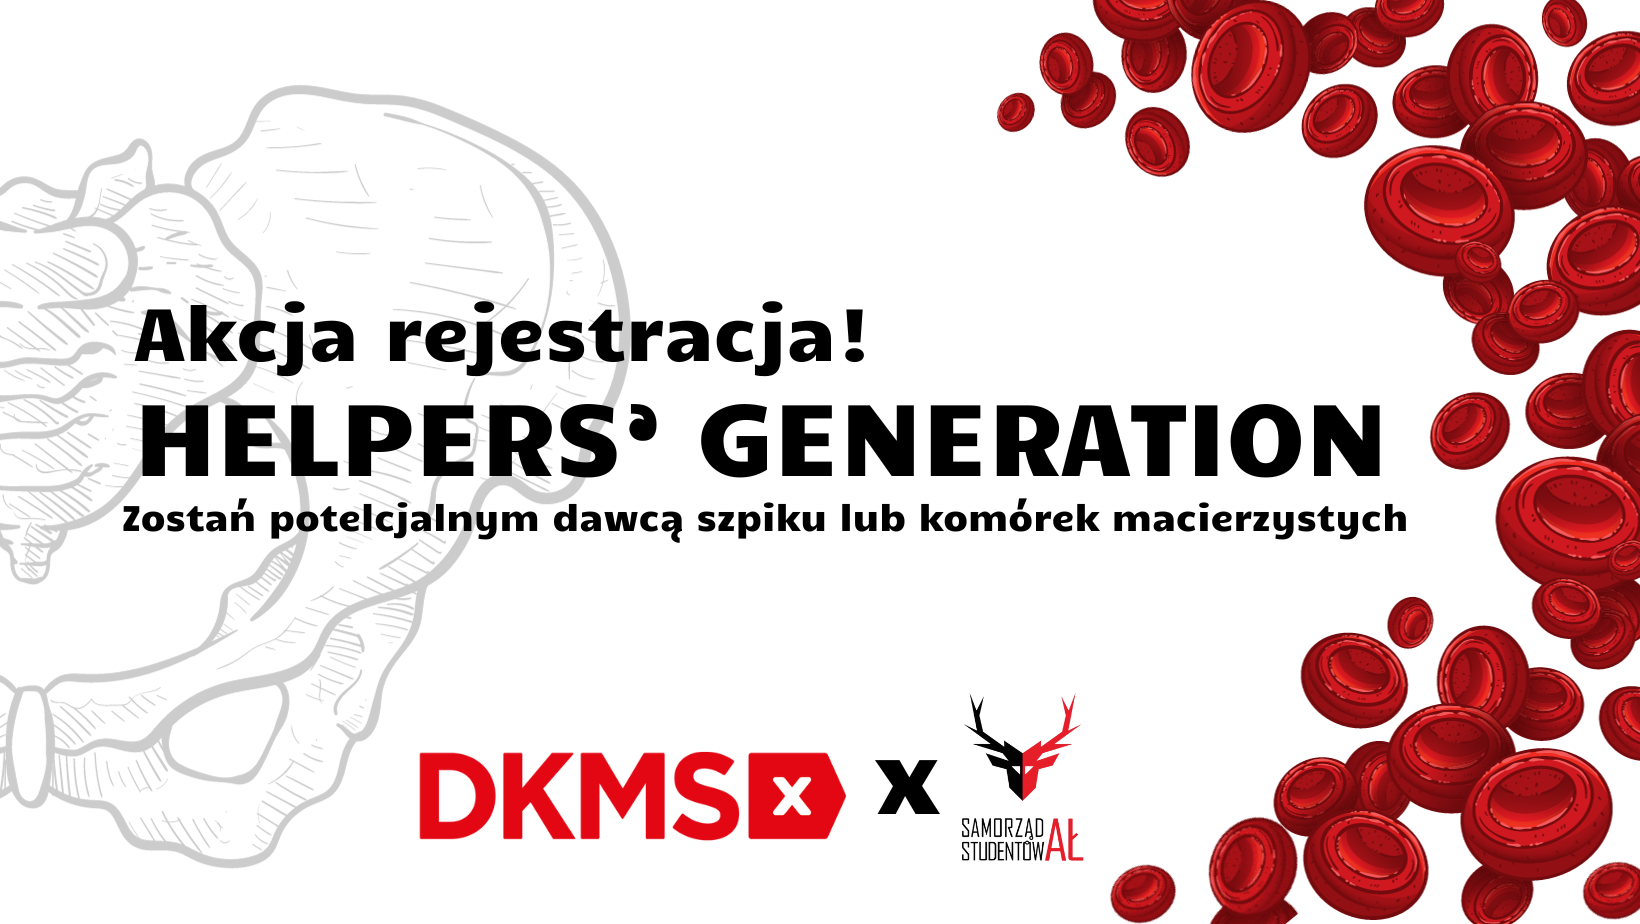 grafika Akcja rejestracja, logo DKMS i SAmorządu Studentów AŁ